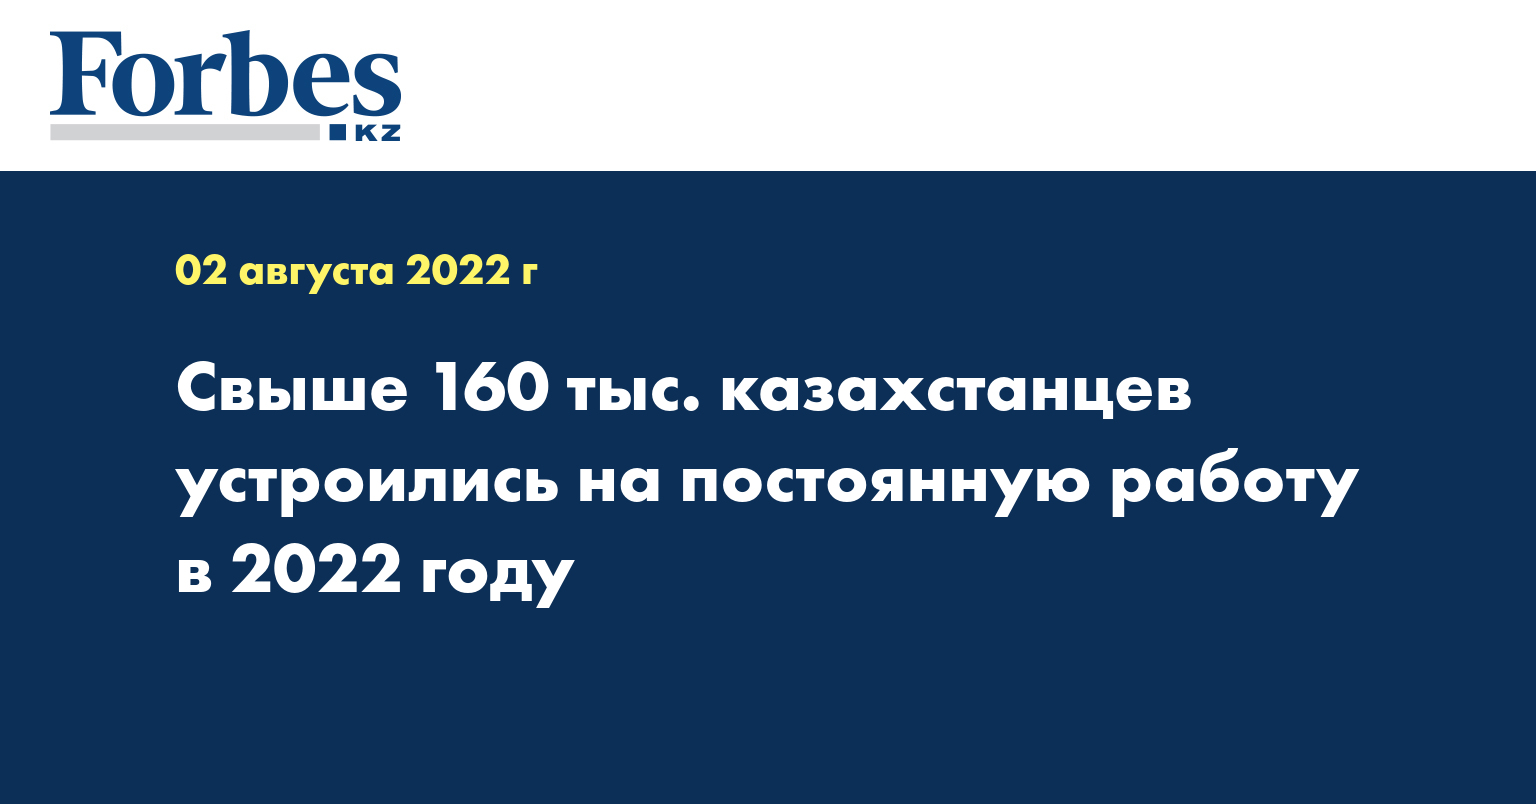 Свыше 160 тыс. казахстанцев устроились на постоянную работу в 2022 году